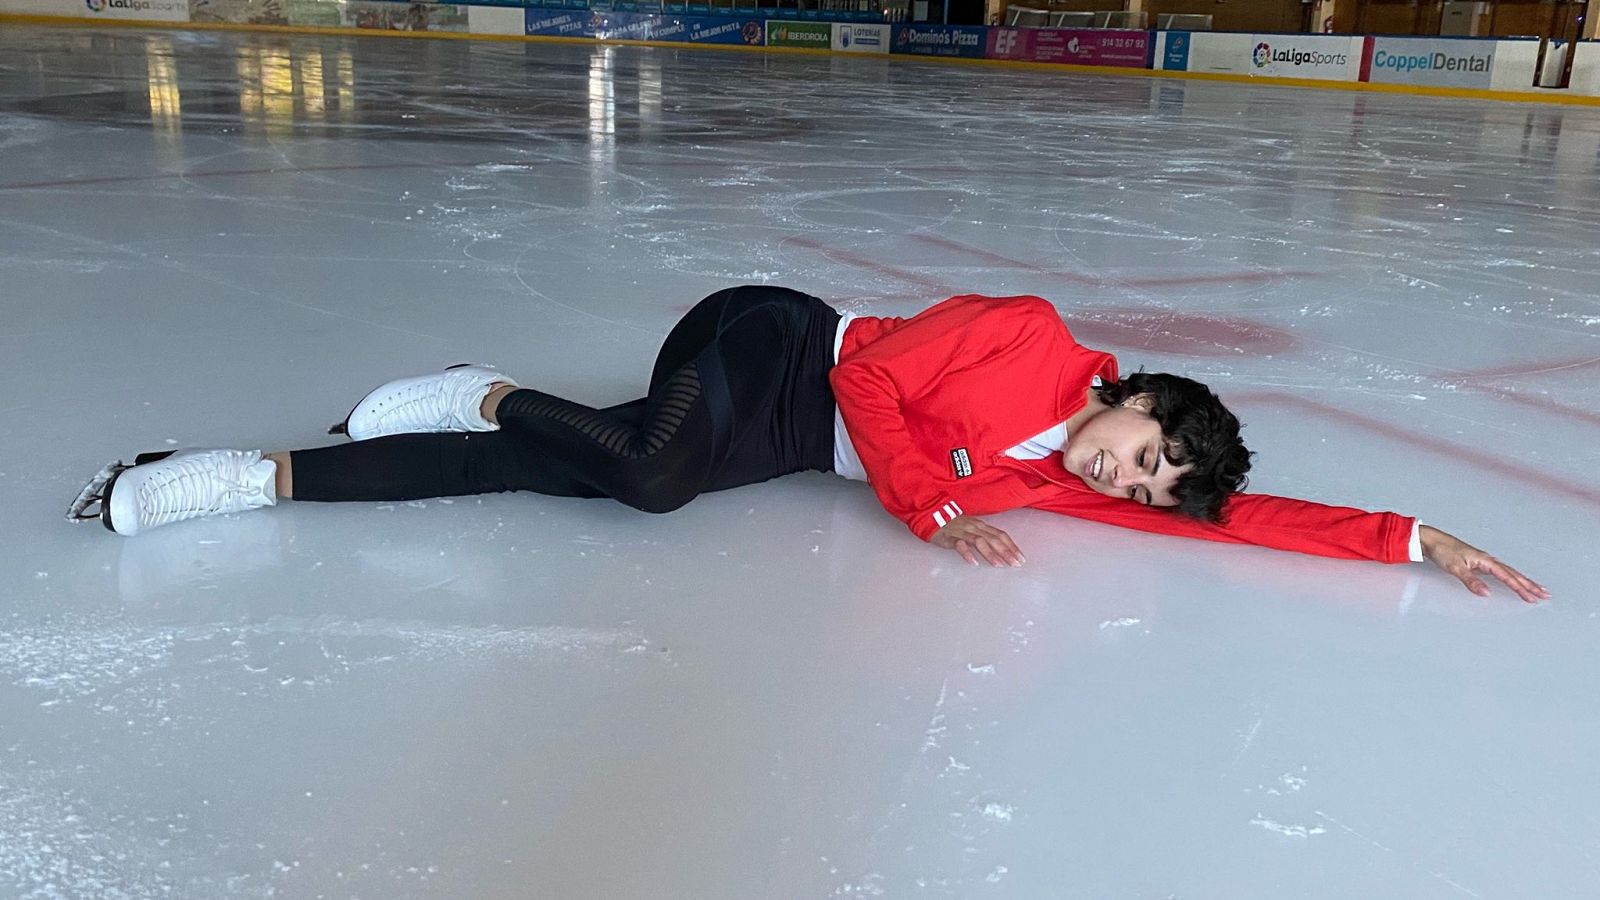 Patinaje sobre hielo | Sara Hurtado: "Volver a ponerme los patines fue un chute de energía"